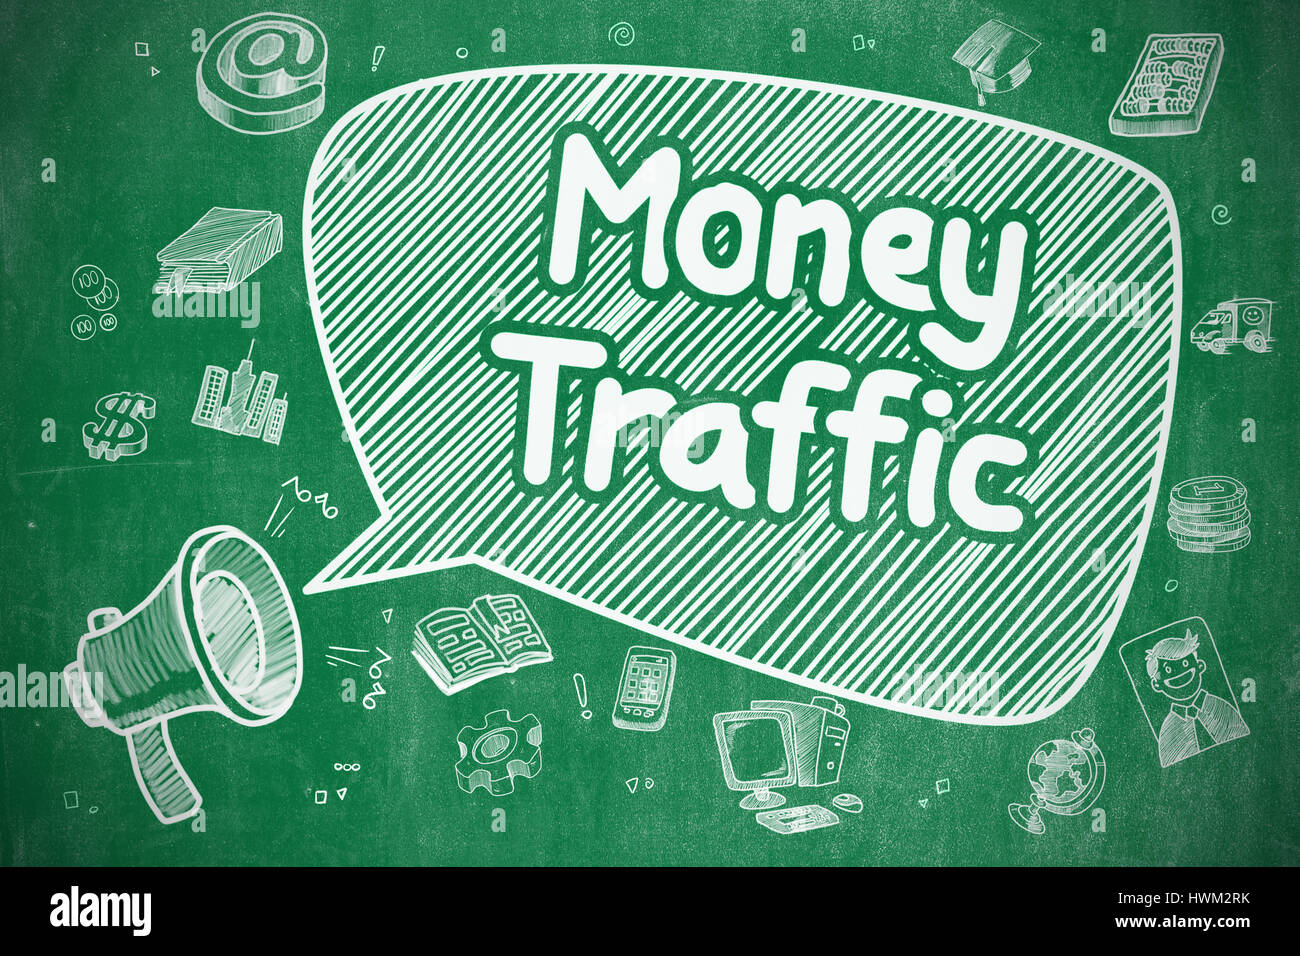 Money Traffic - Cartoon Illustration on Green Chalkboard. Stock Photo